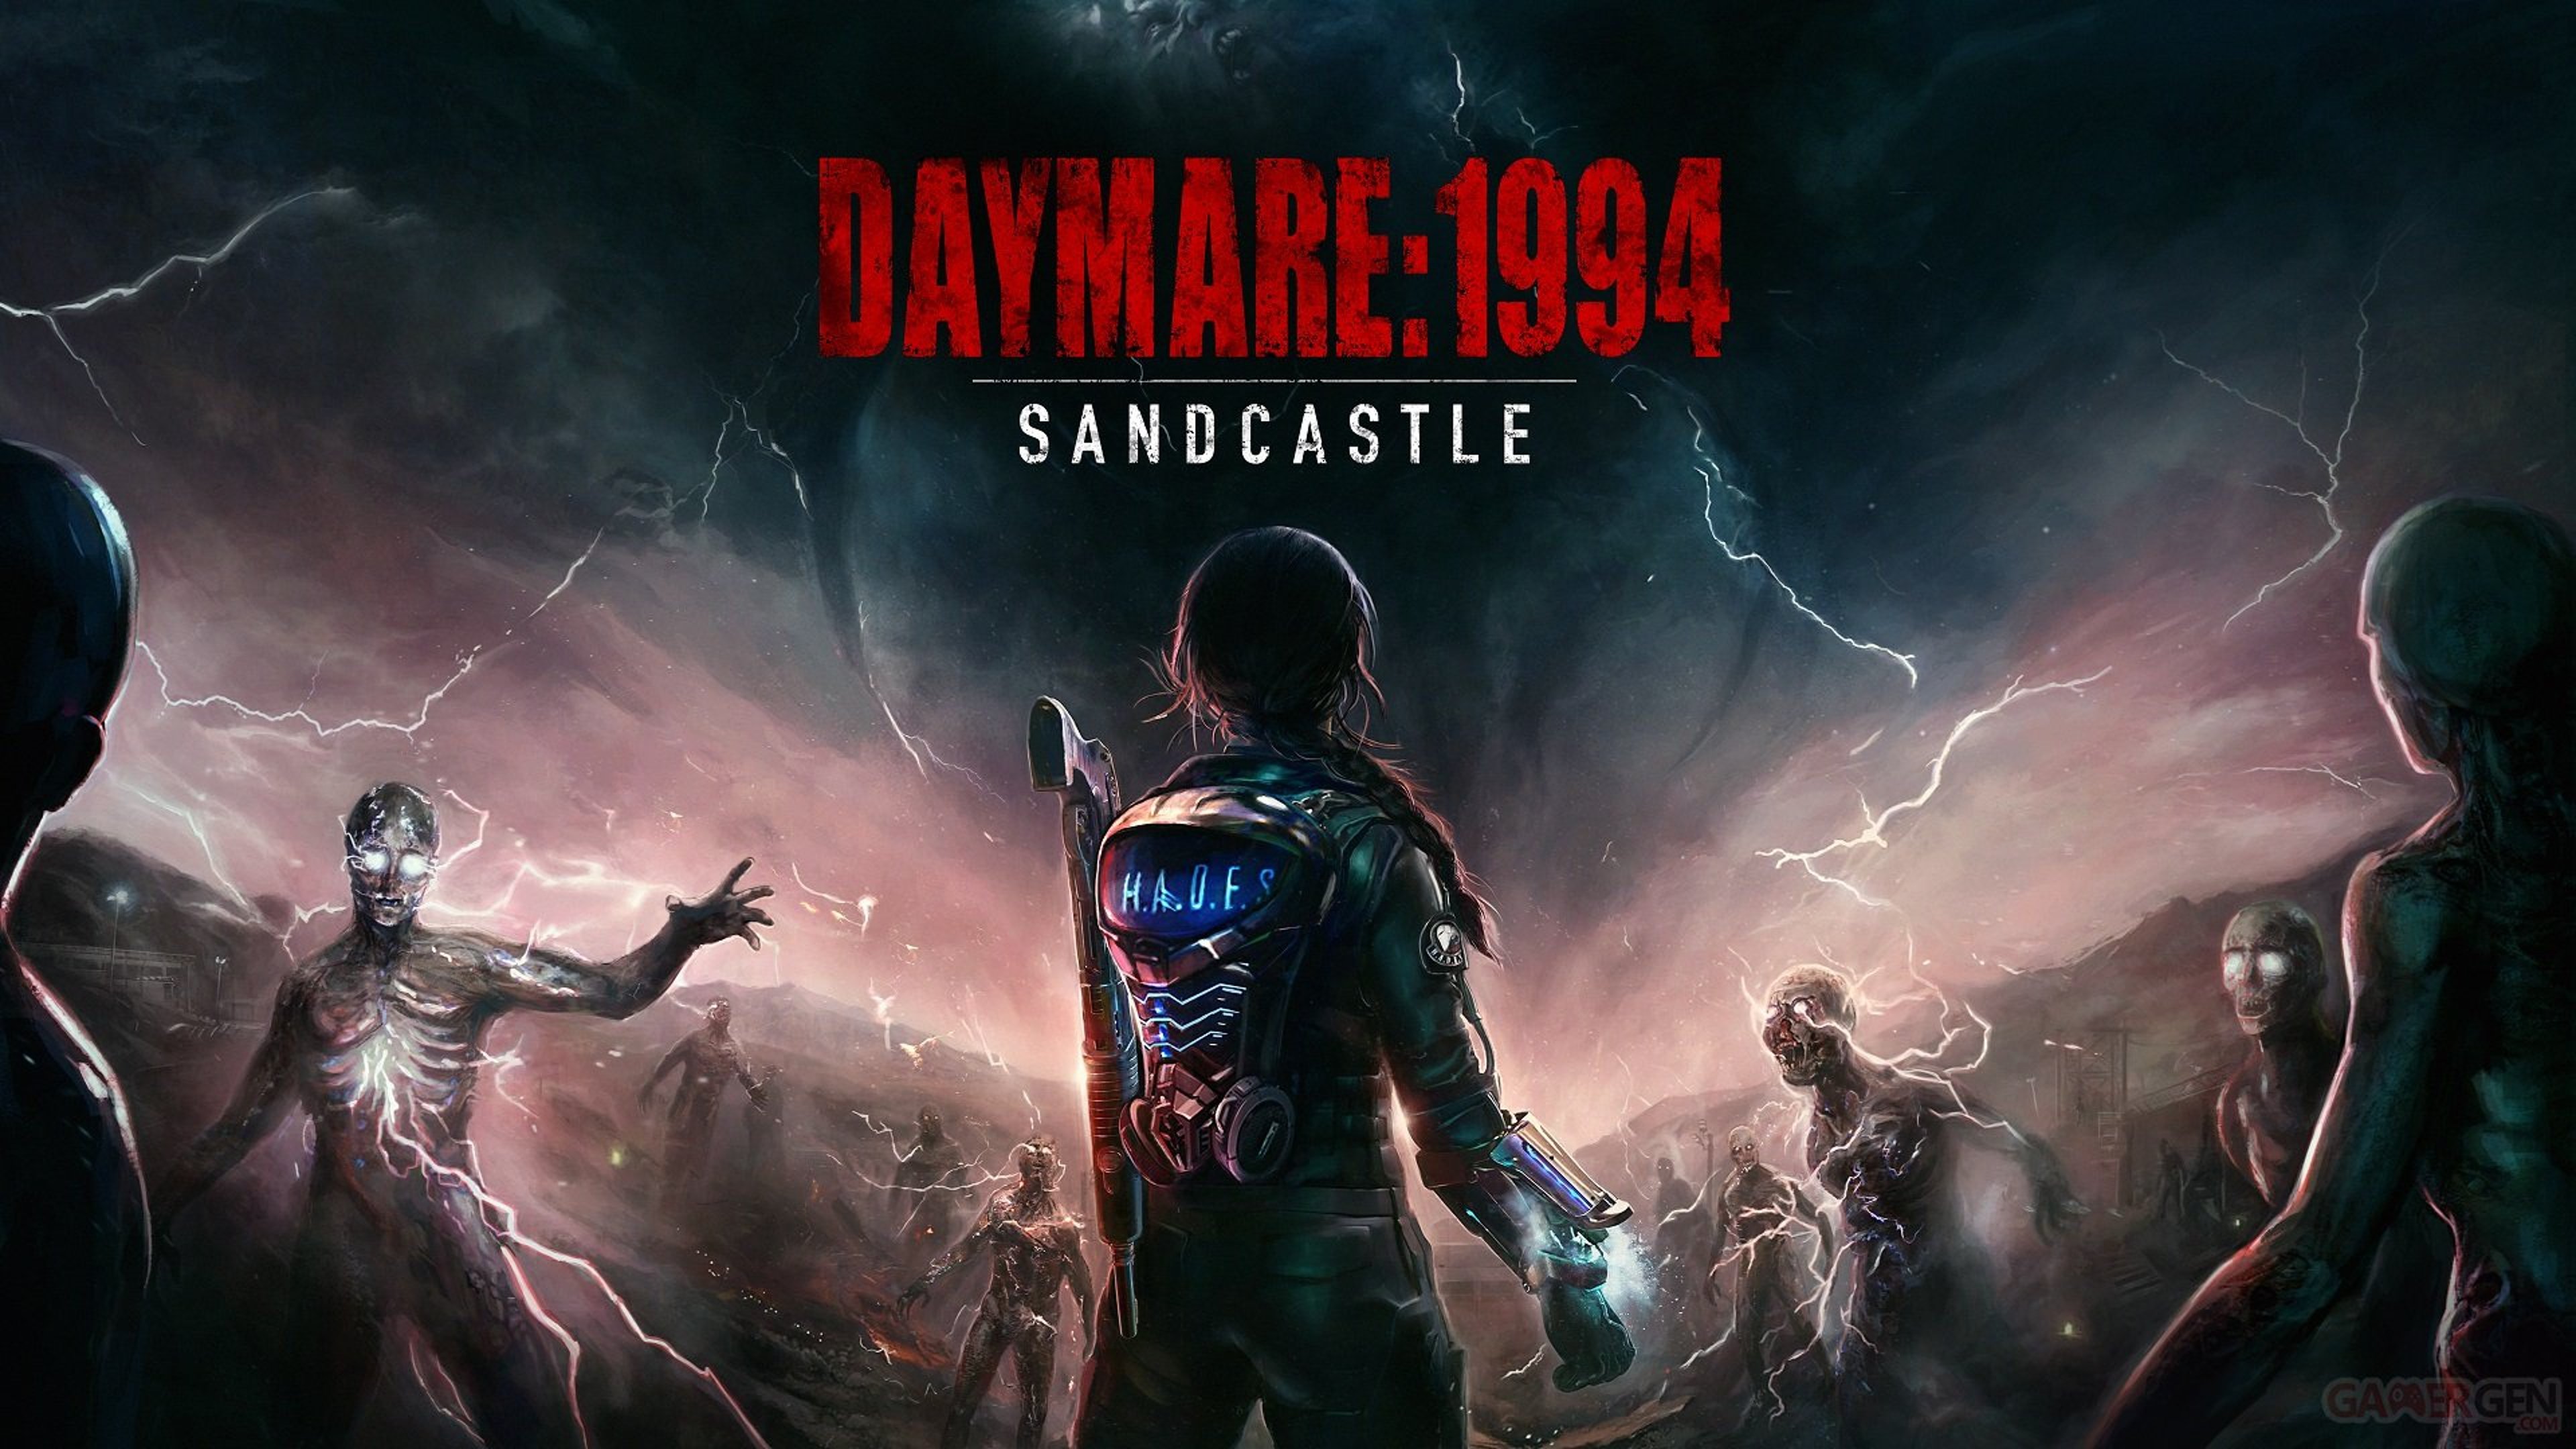 Daymare: 1994 Sandcastle, Recensione: solo un clone di Resident Evil?